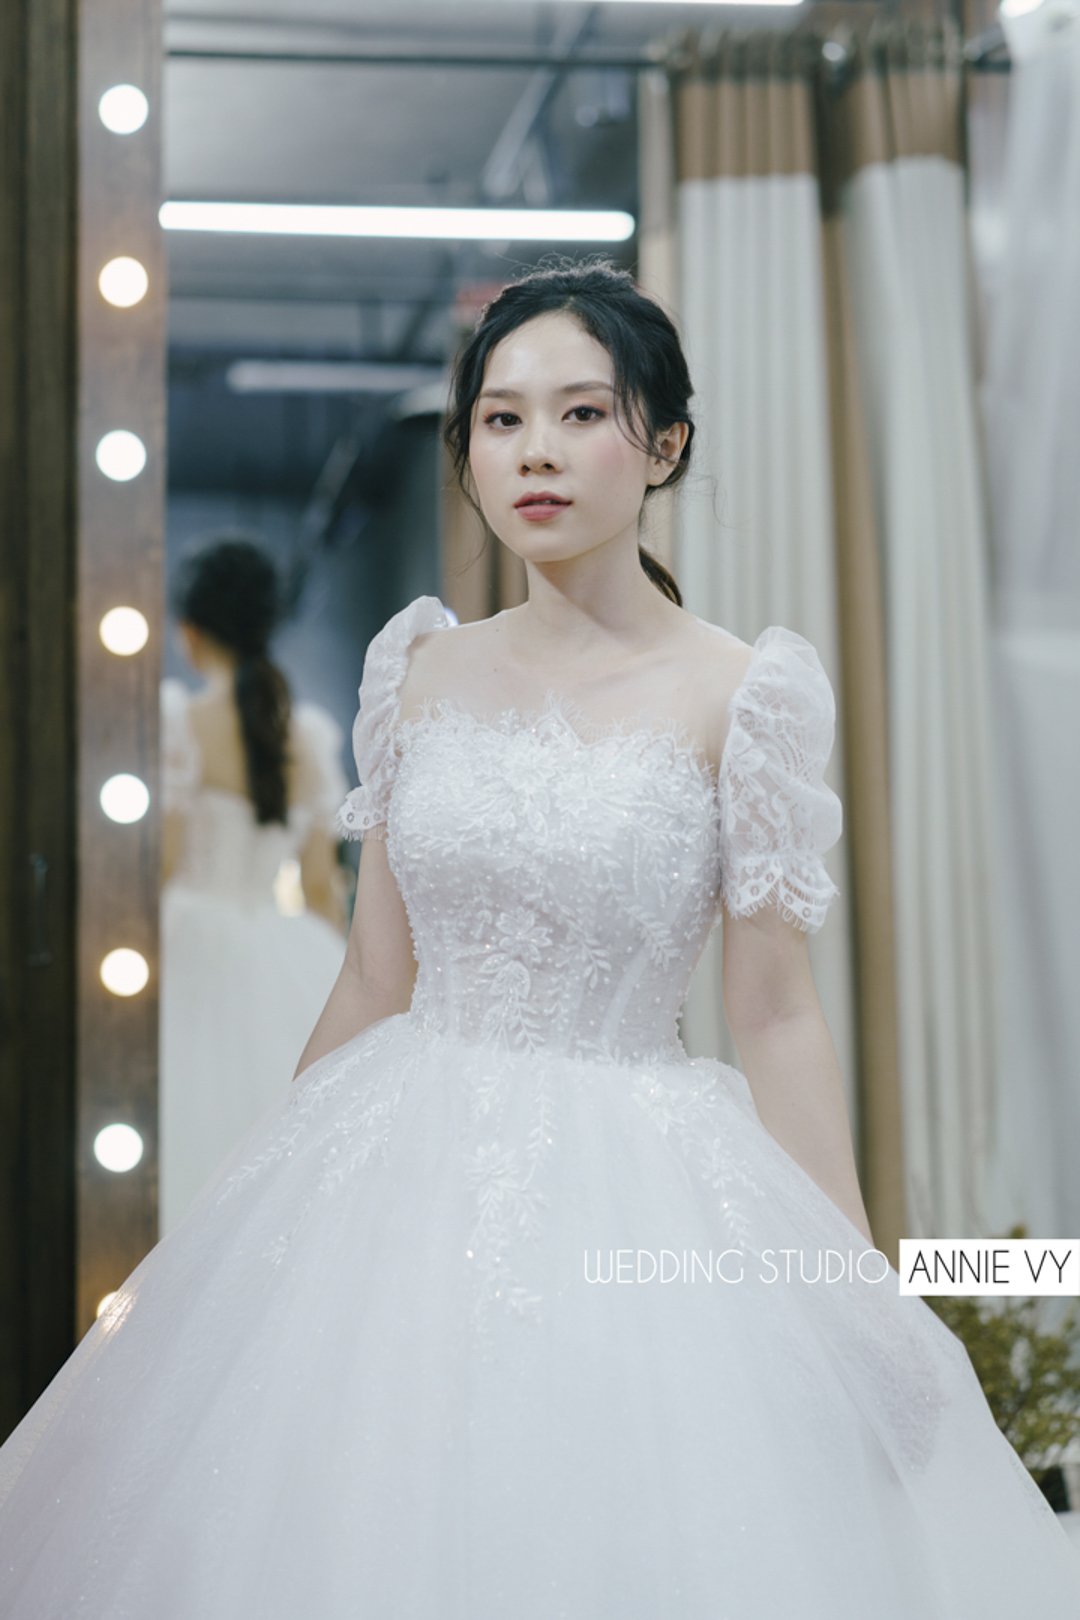 4 tips chọn váy cưới cho cô dâu có phần tay đầy đặn  Ren Bridal